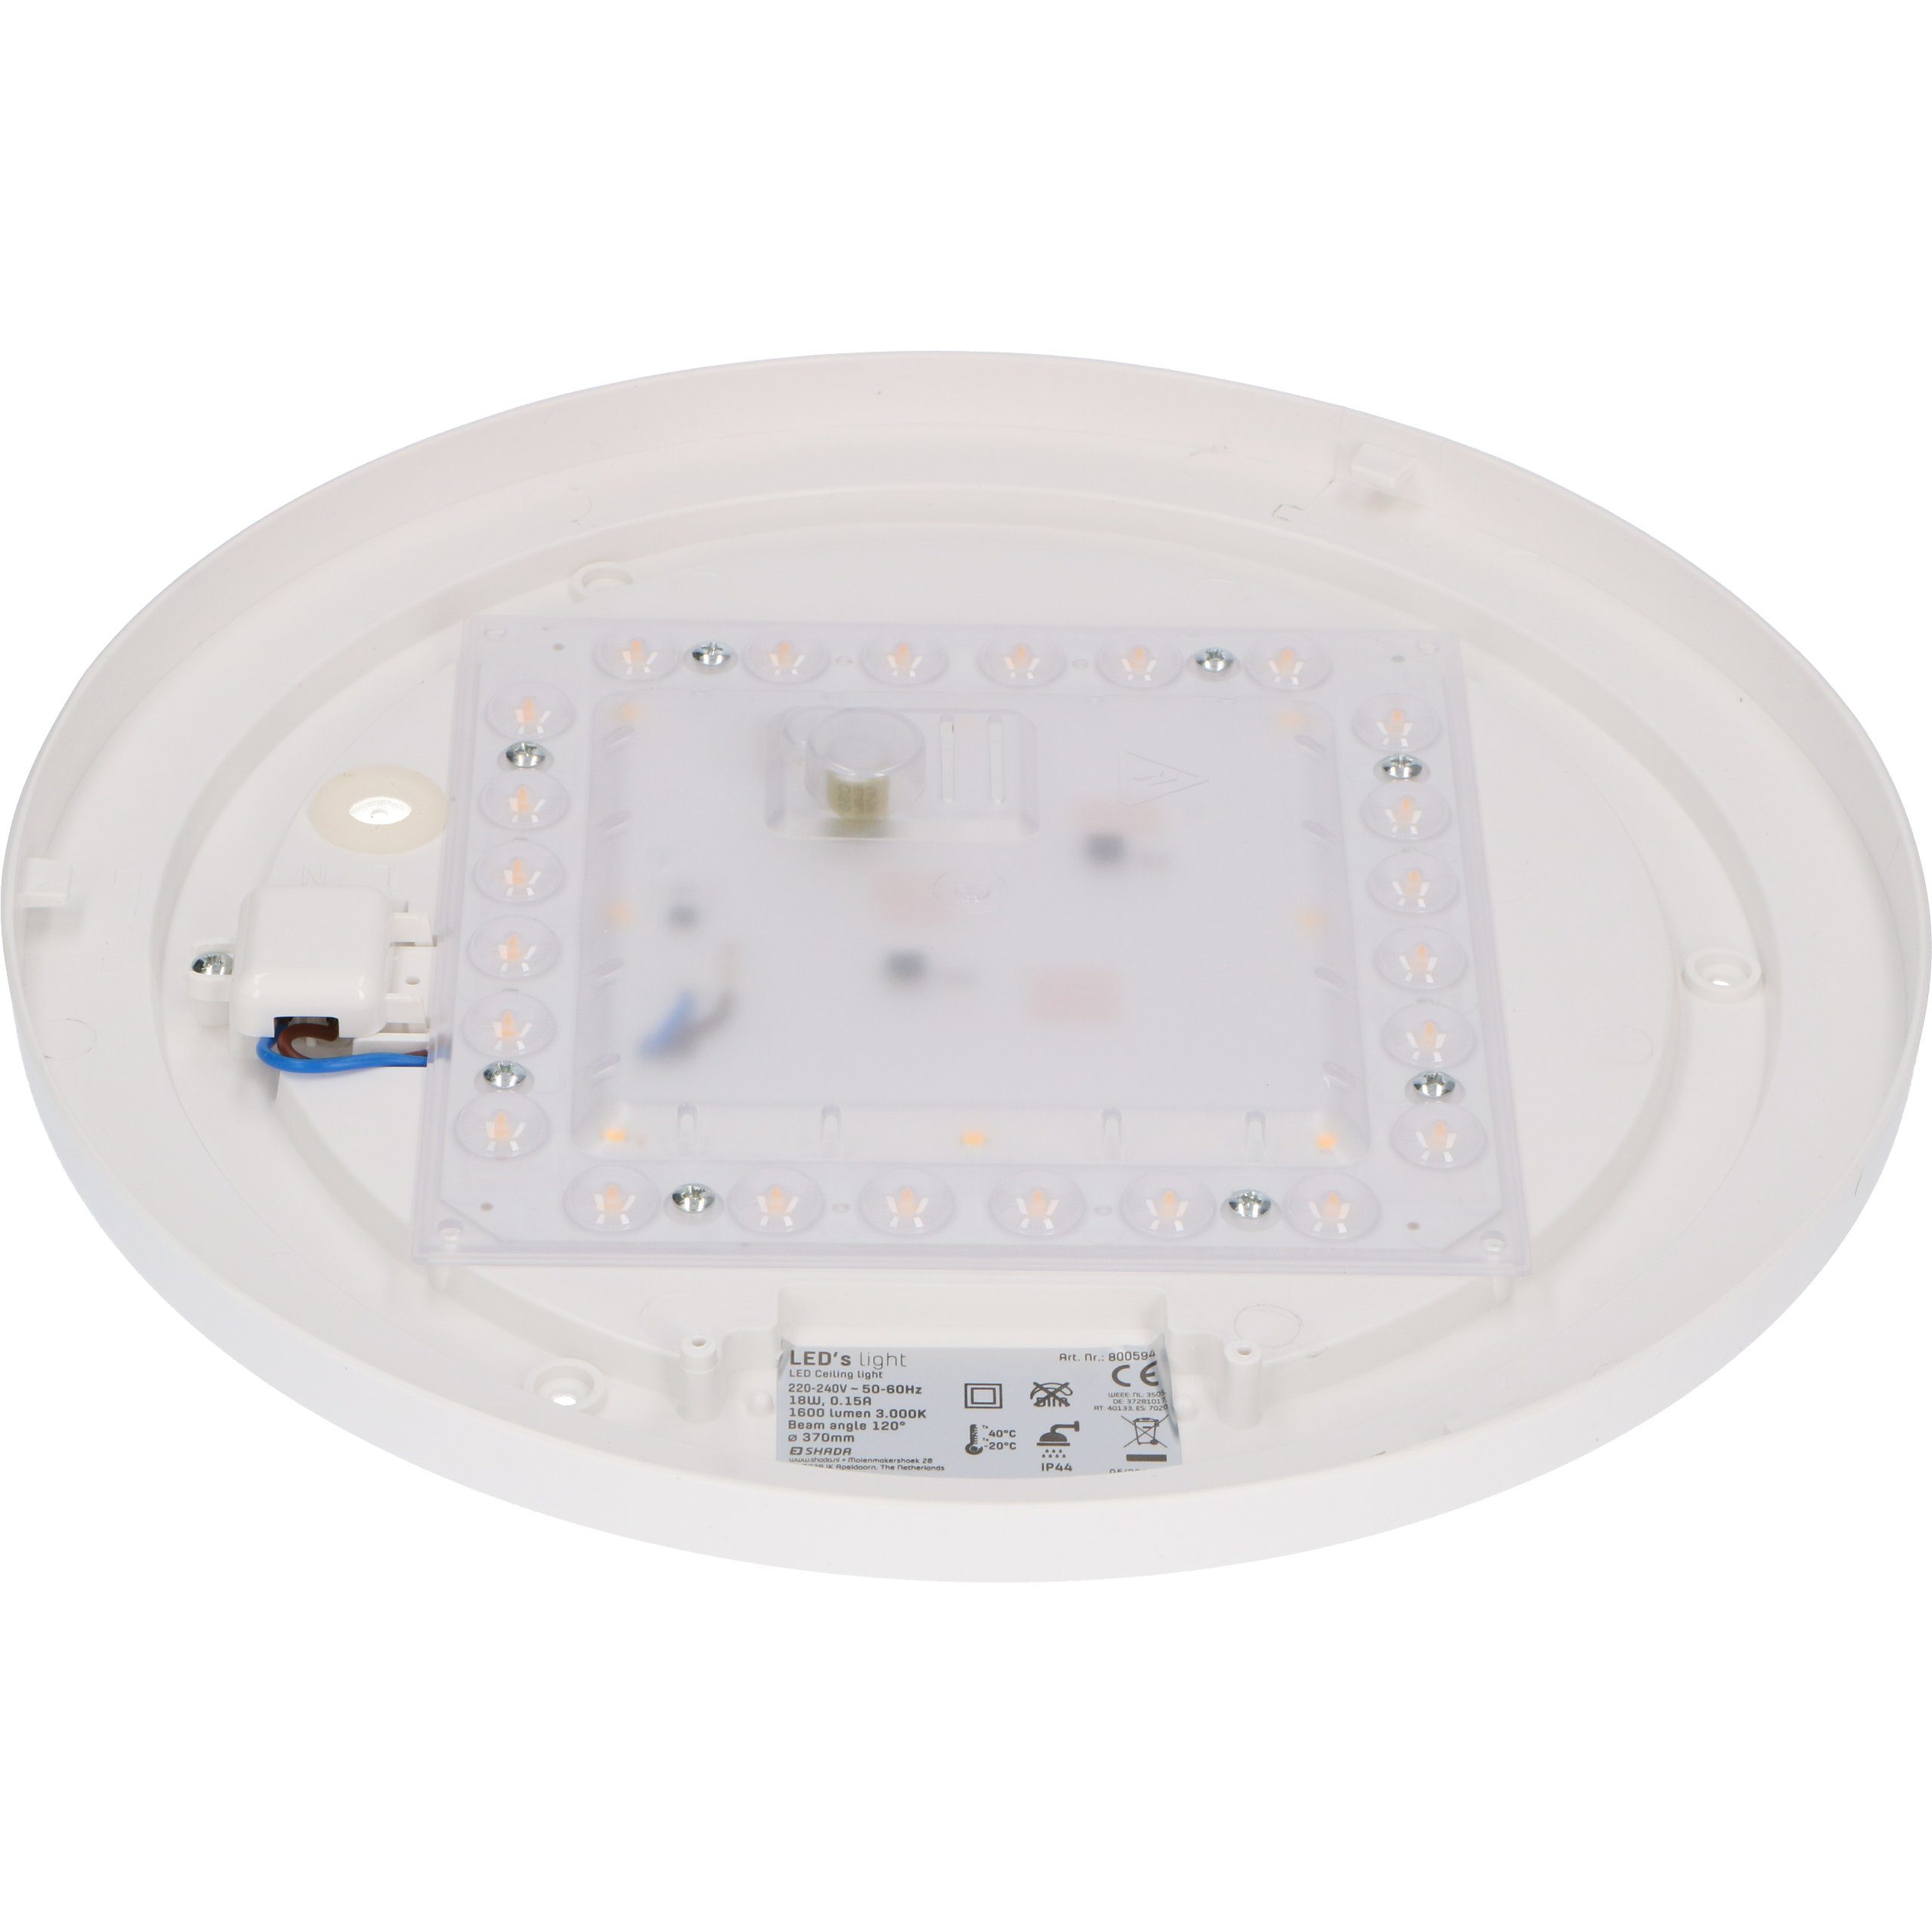 LED warmweiß 18W Schutzbereich Deckenleuchte, geeignet LED, 3 0800594 light 37cm LED's Deckenleuchte IP44